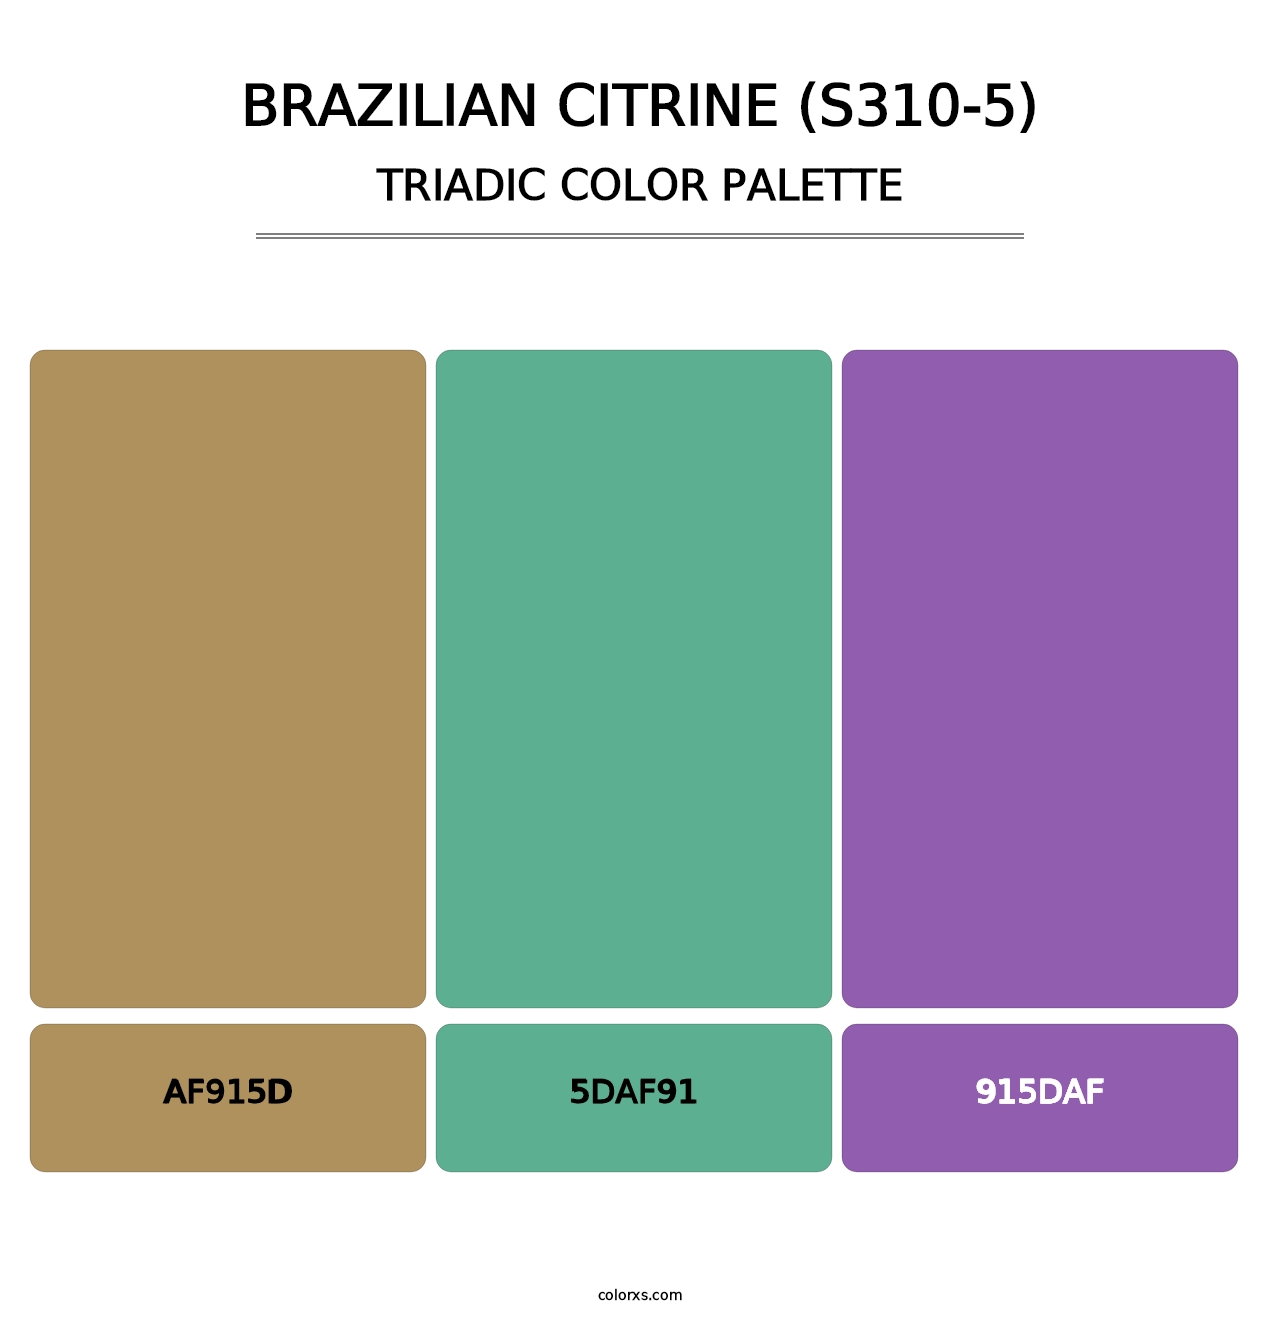 Brazilian Citrine (S310-5) - Triadic Color Palette